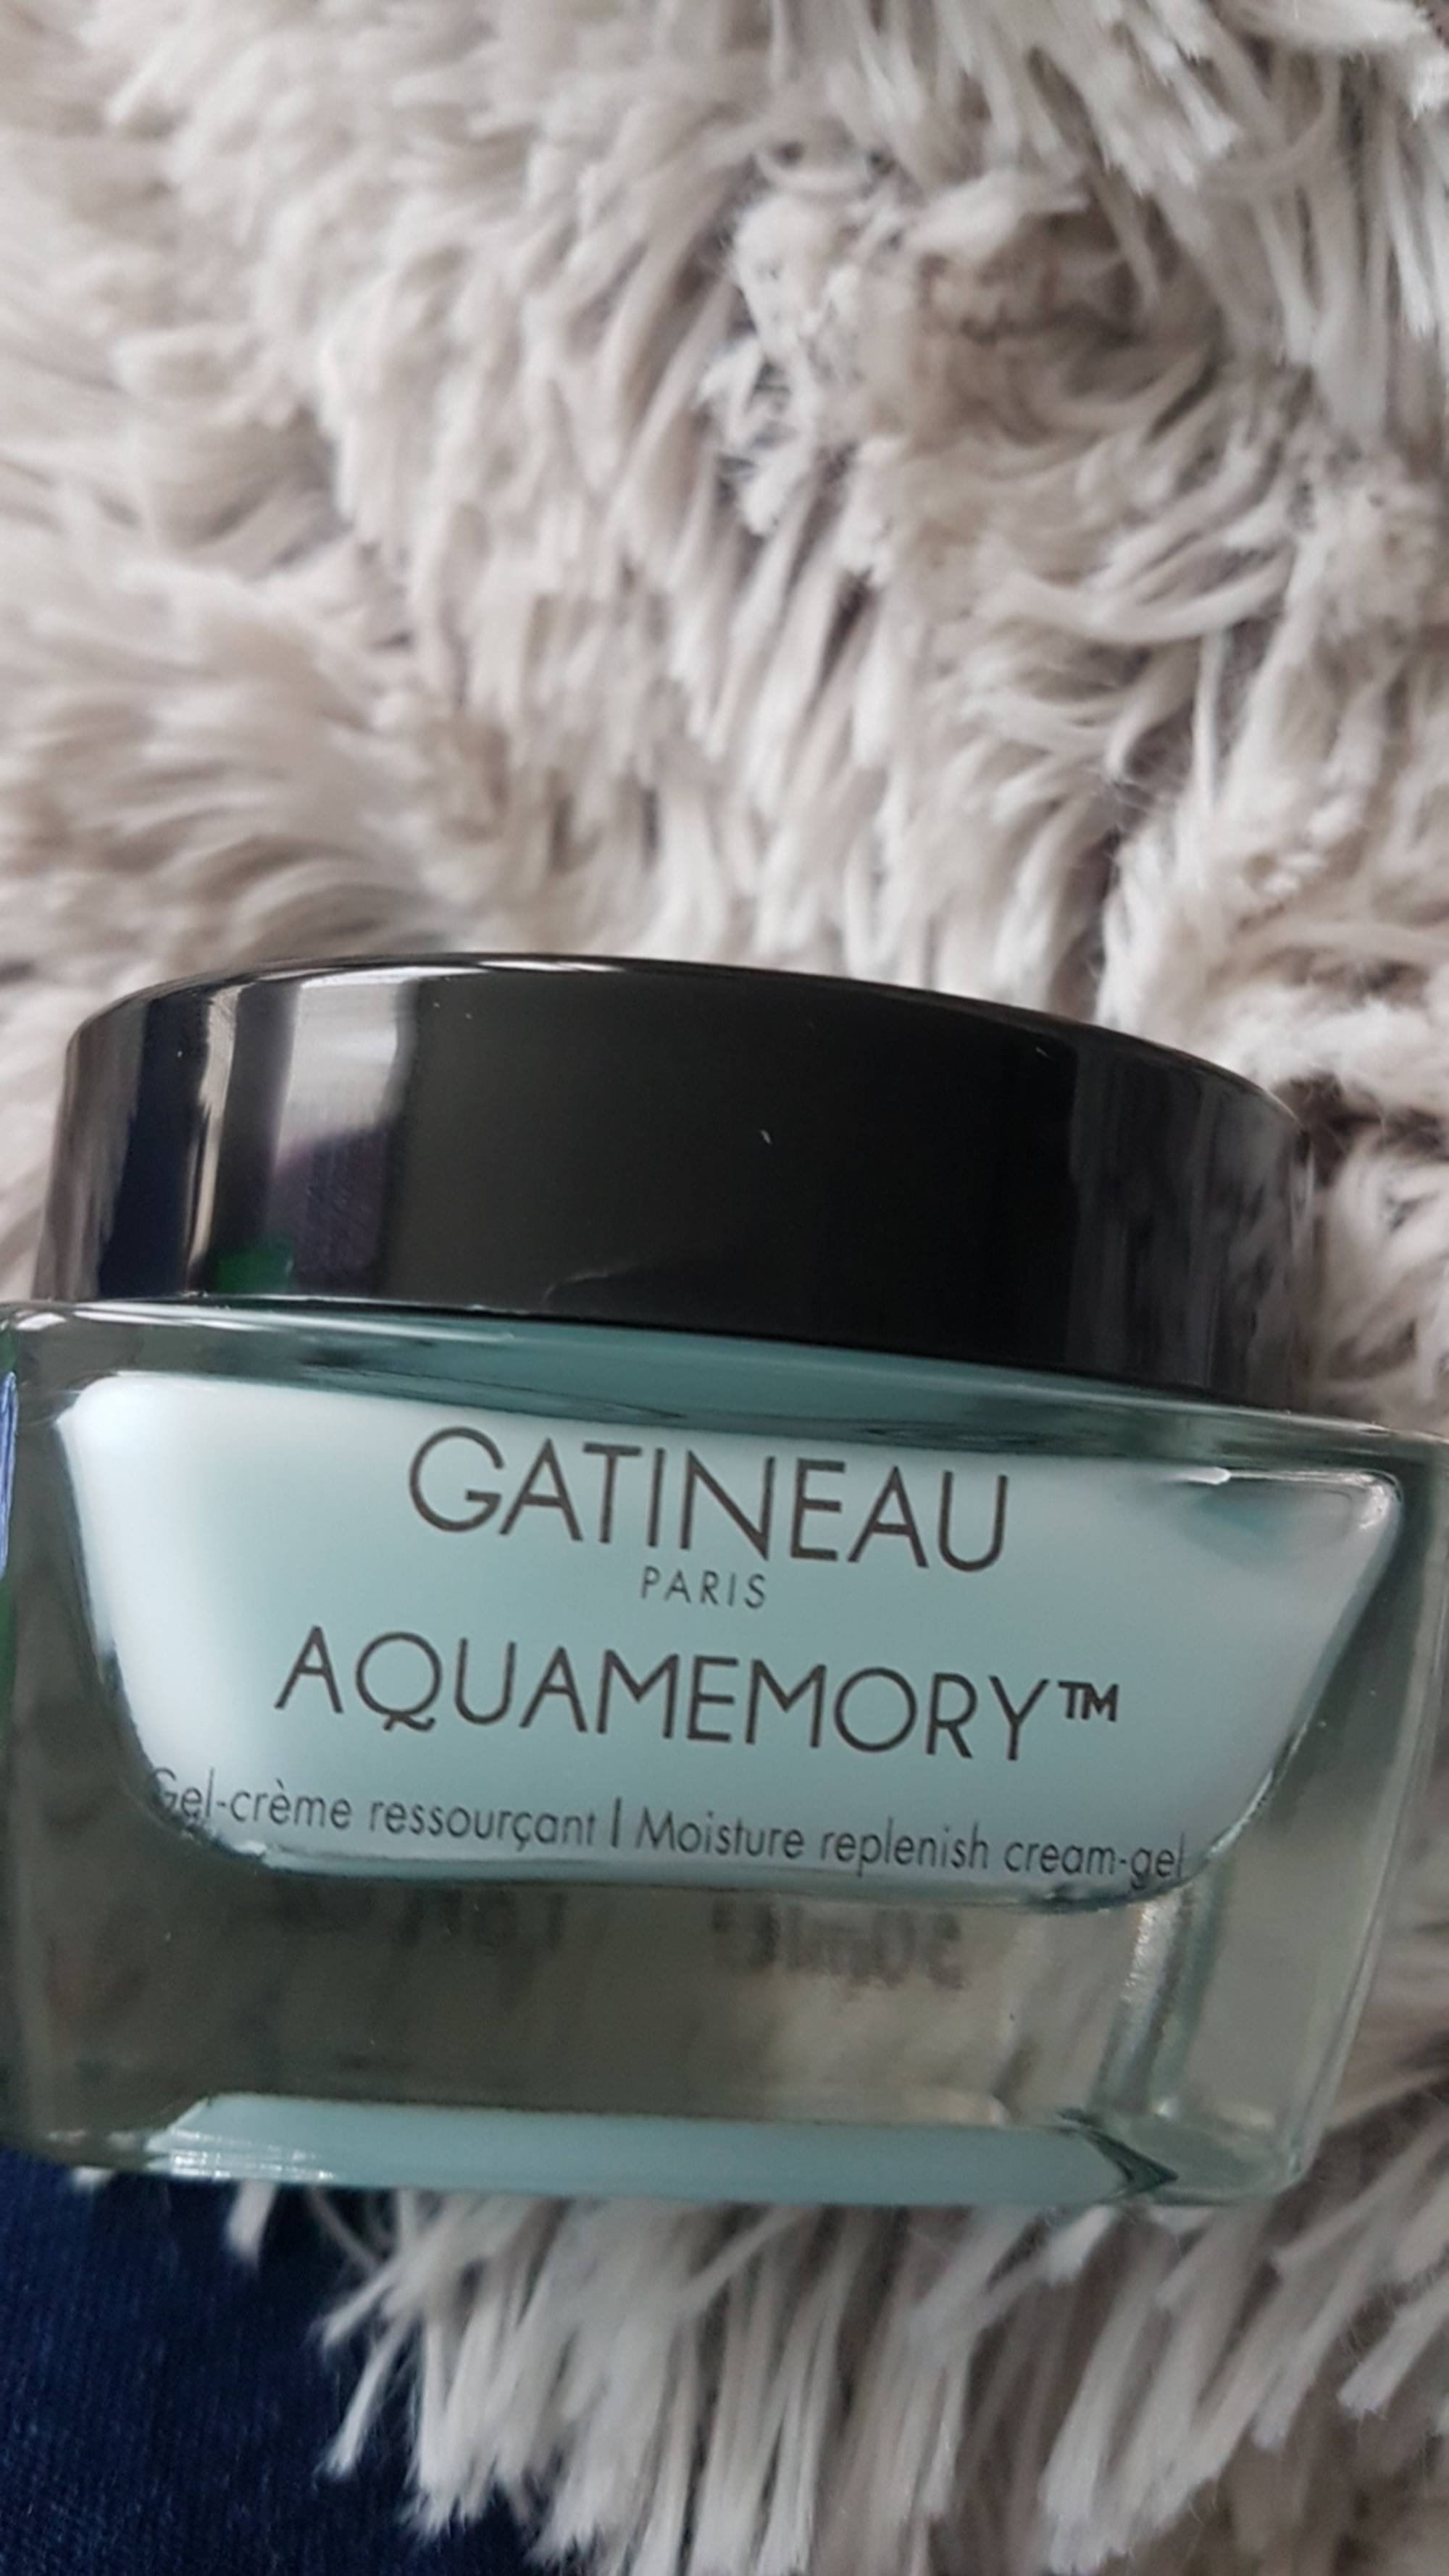 GATINEAU PARIS - Aquamemory - Gel-crème ressourçant